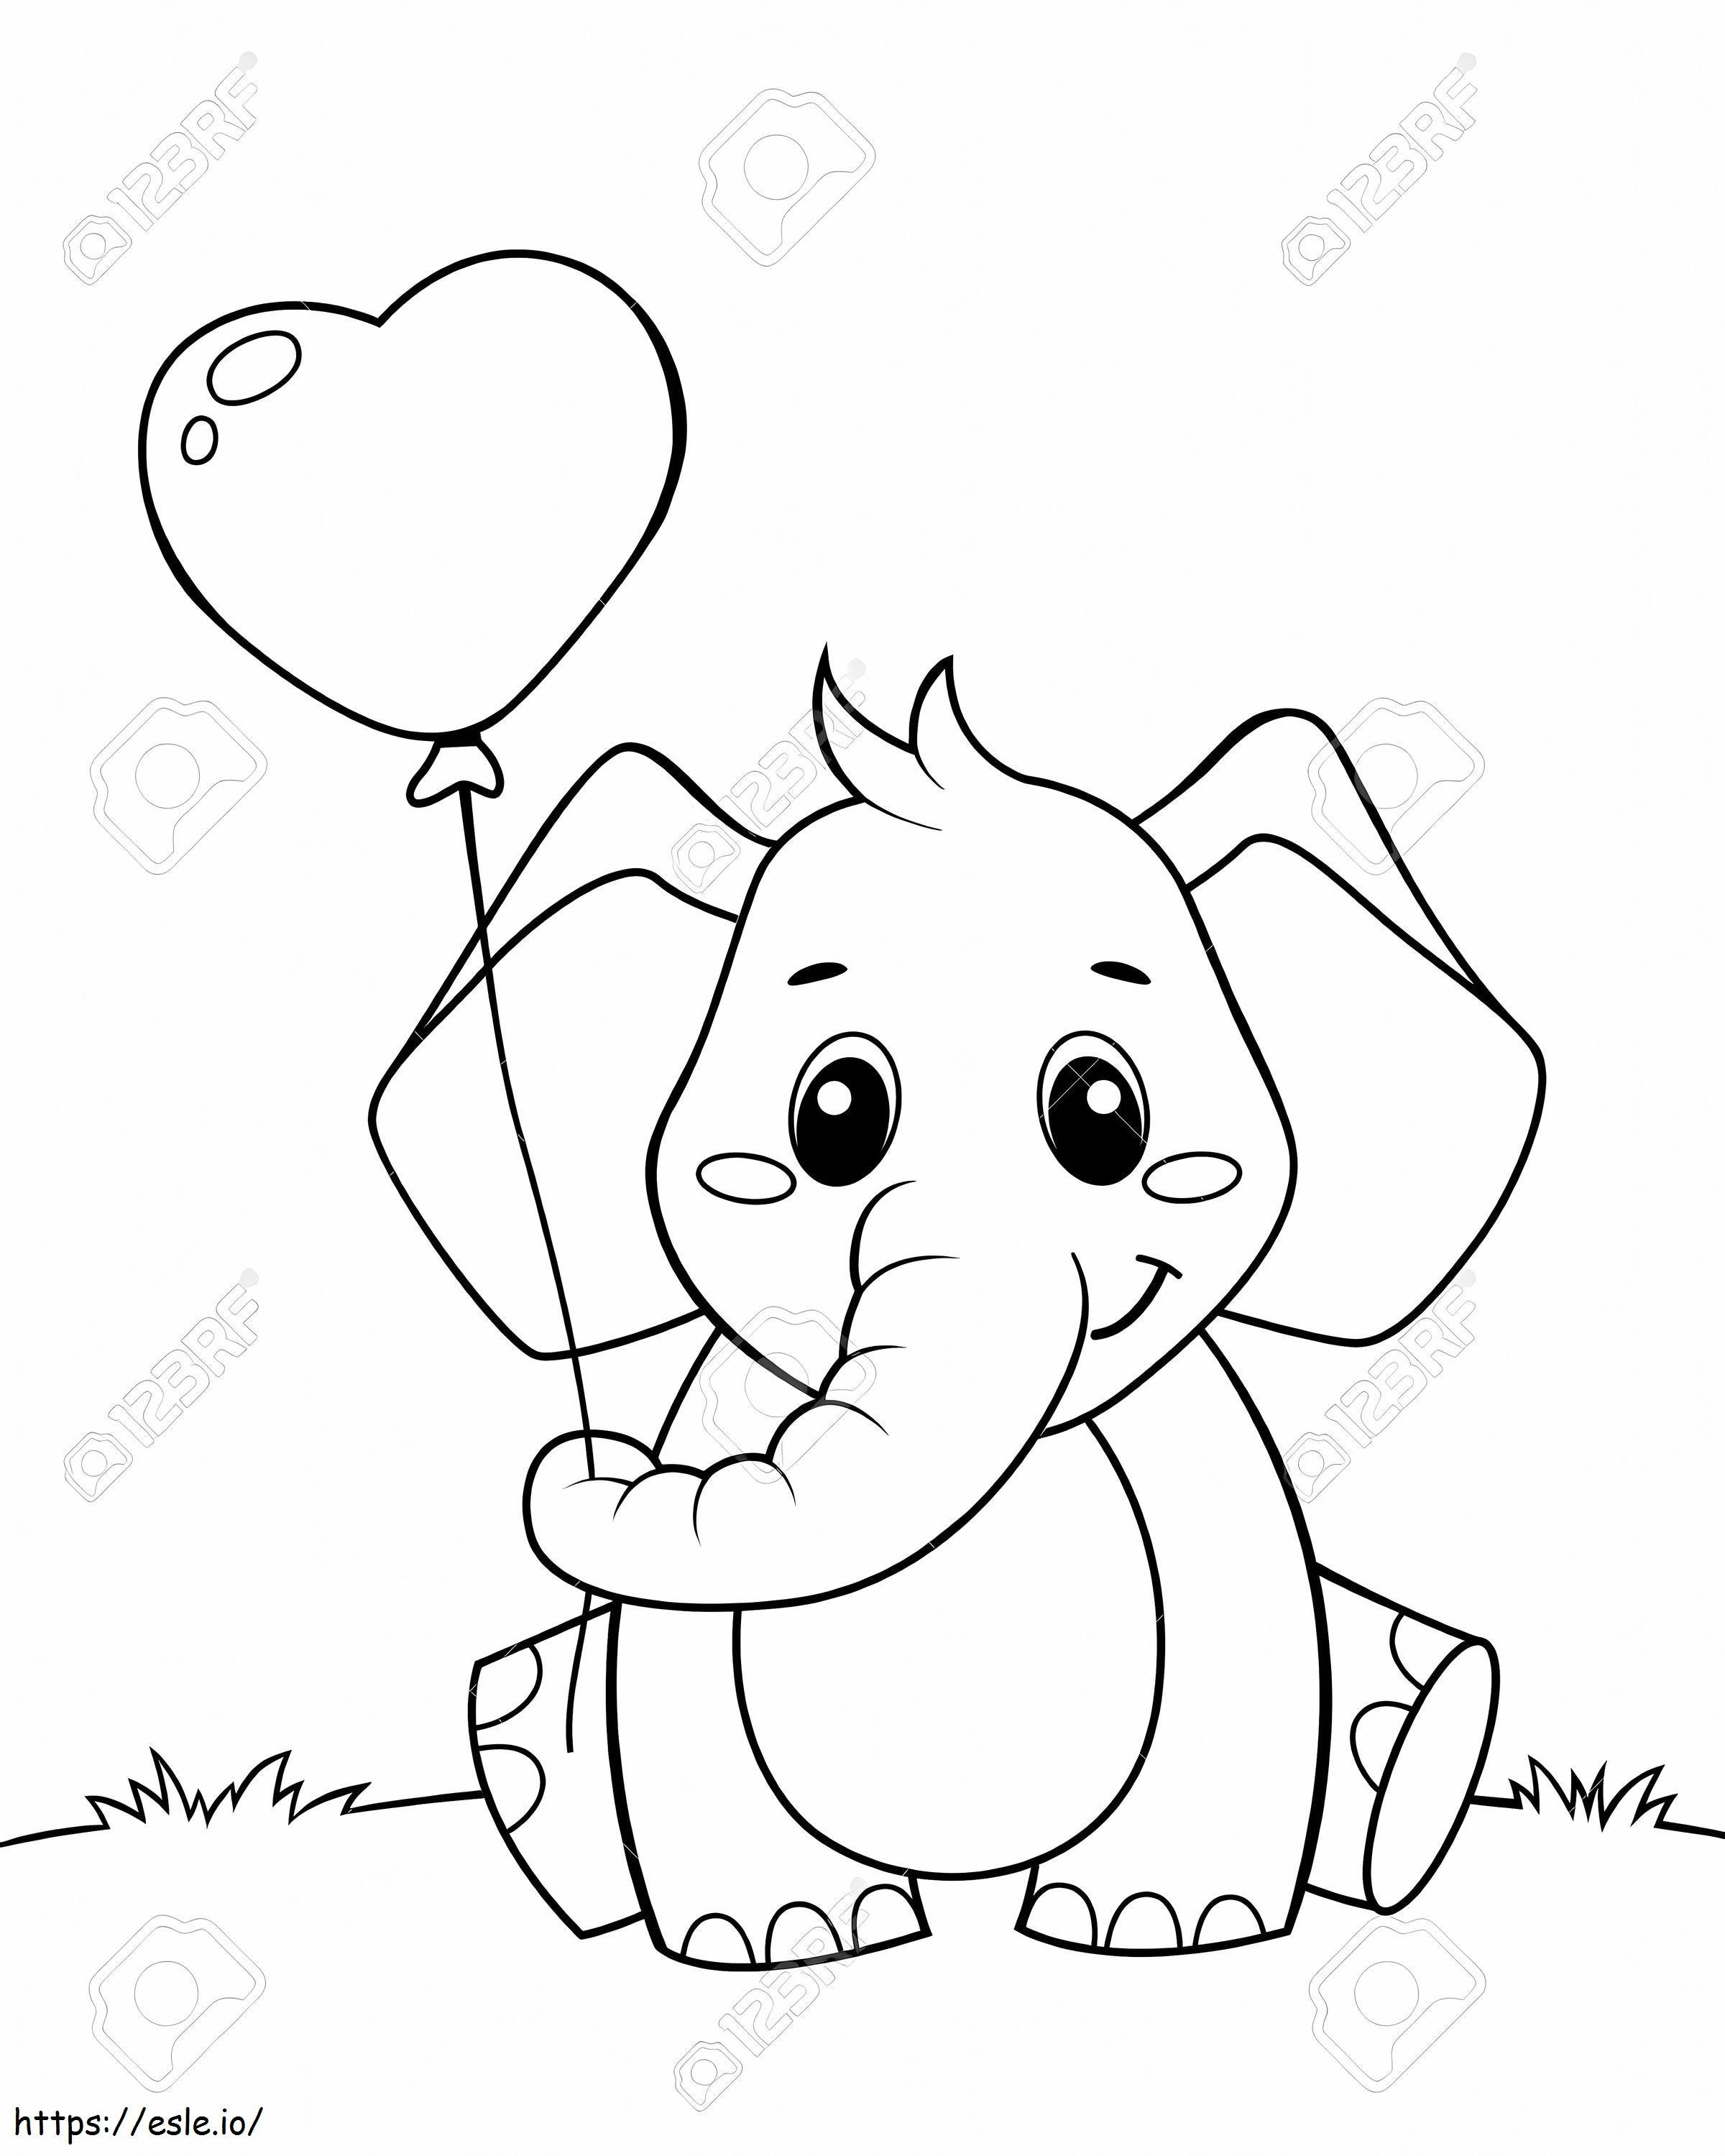  Elefantito lindo sosteniendo un globo en forma de corazón Ilustración vectorial en blanco y negro para colorear para colorear